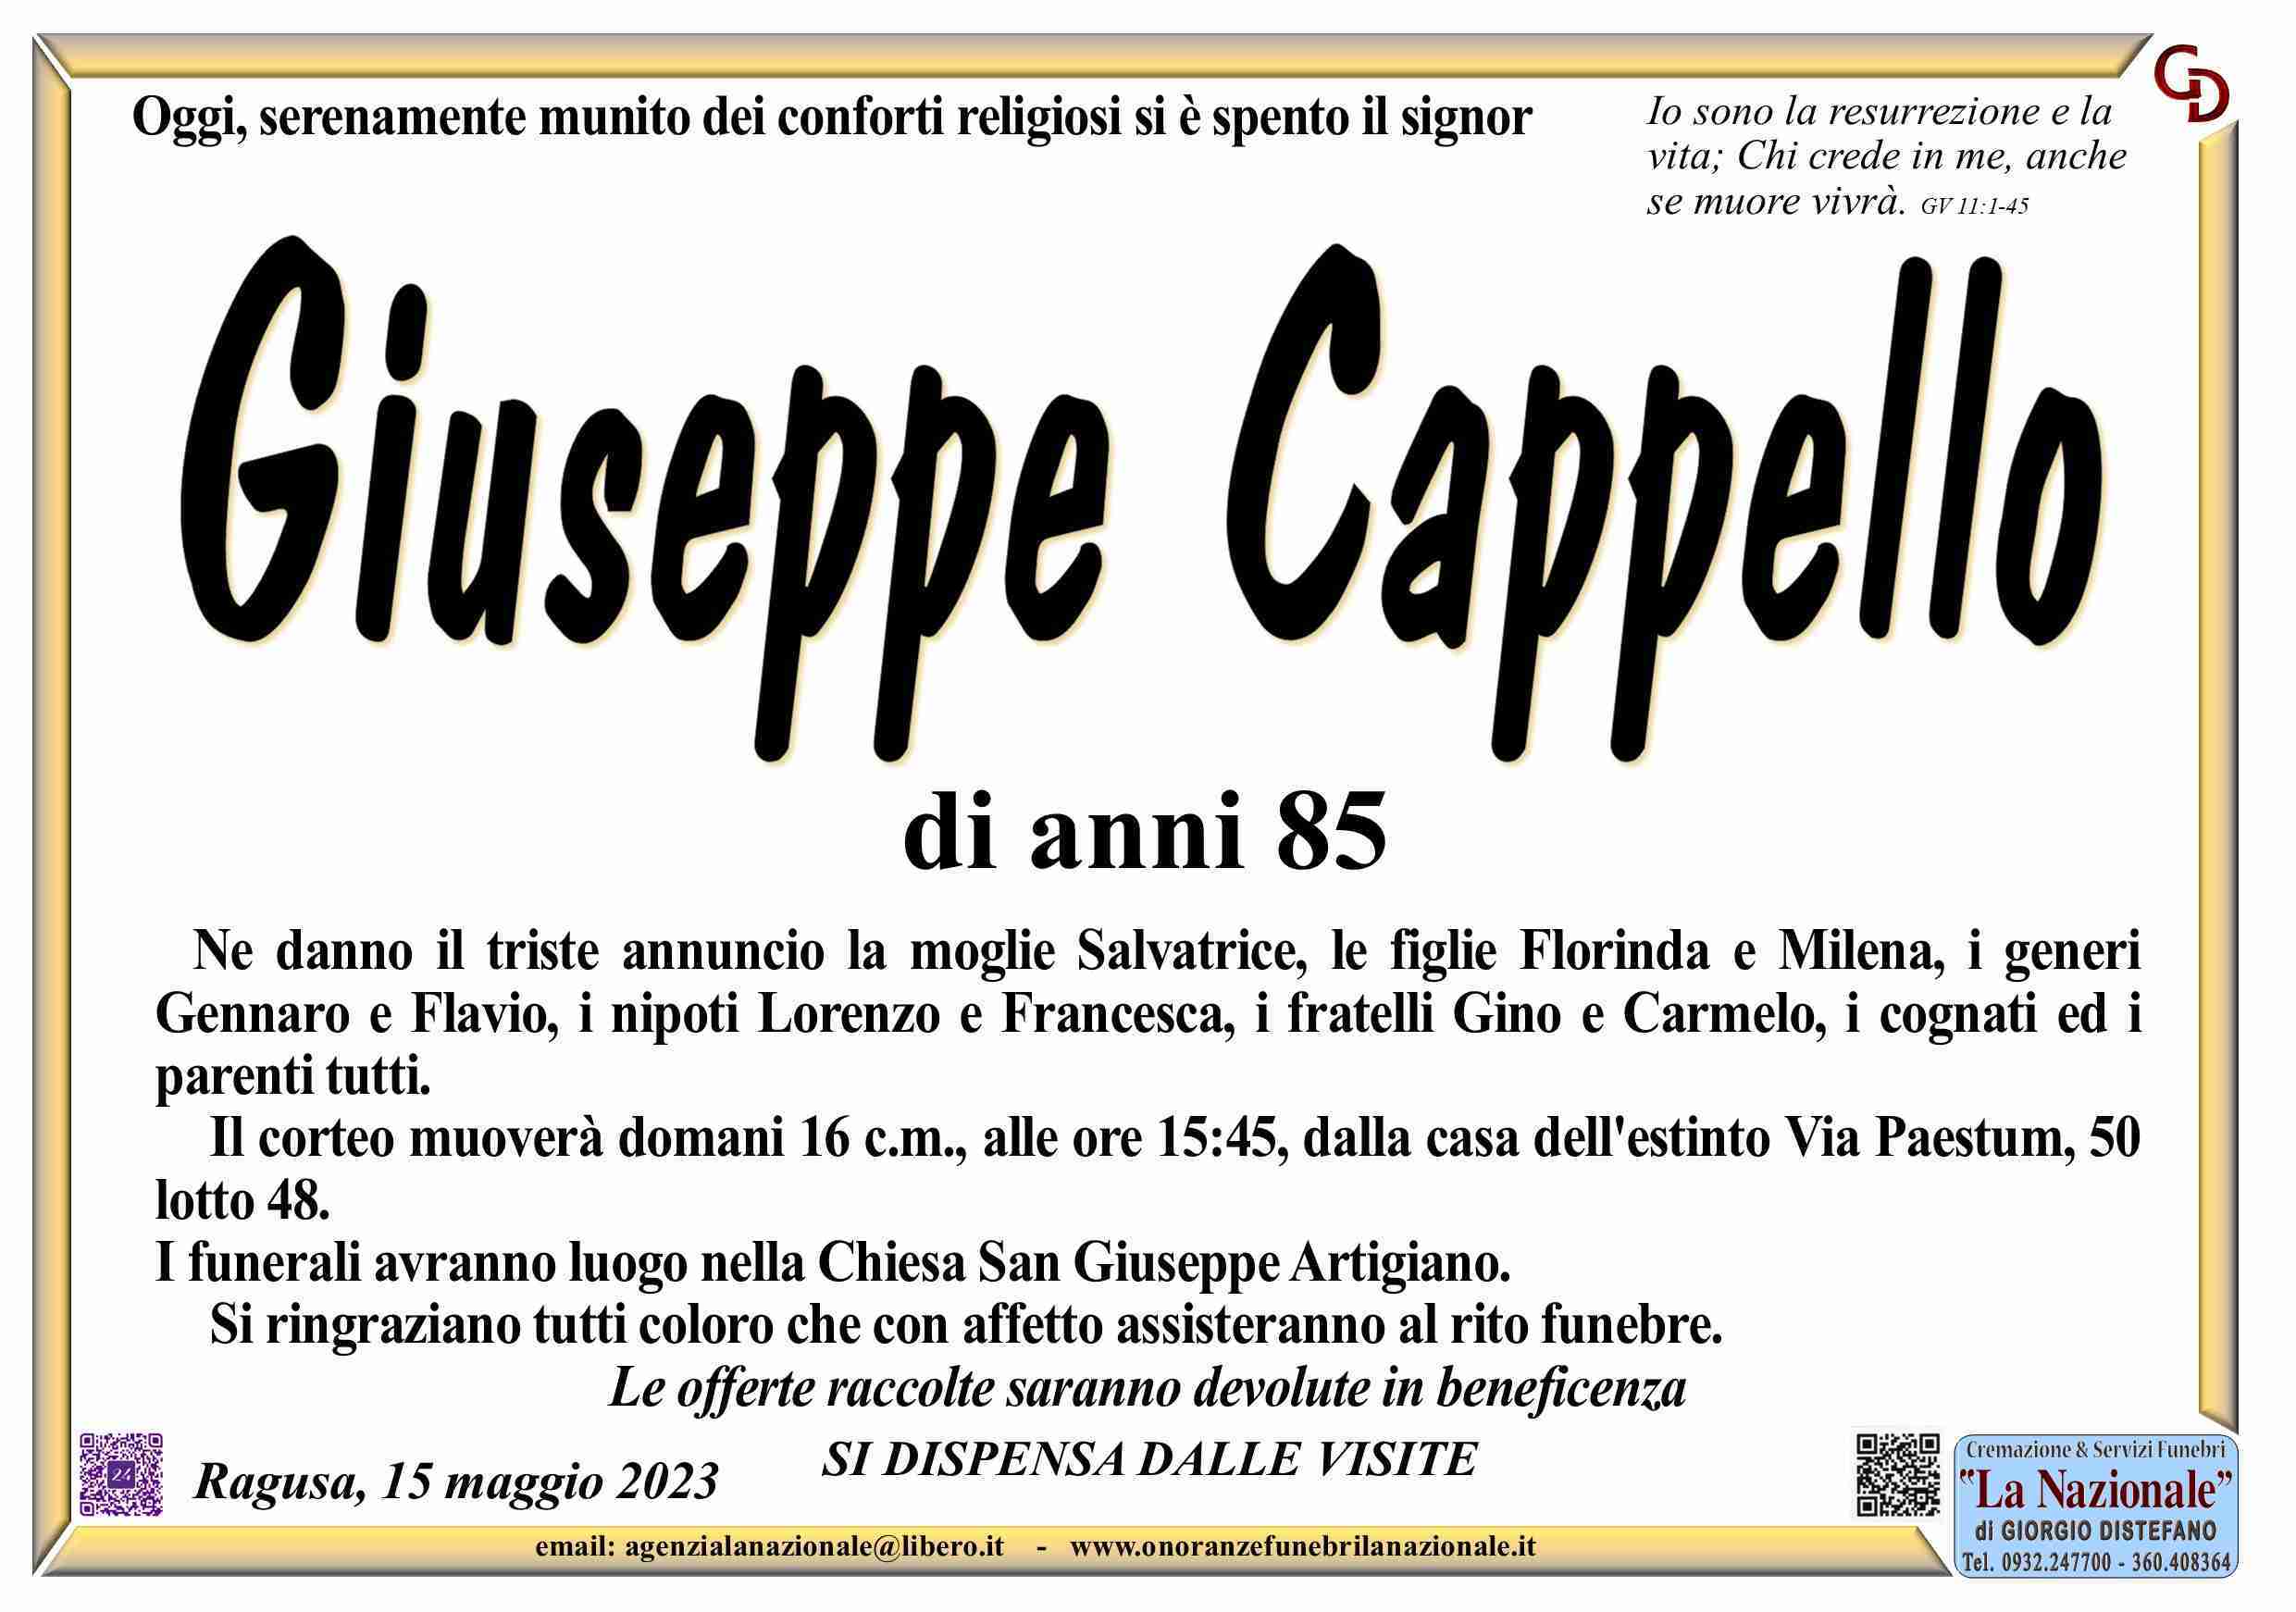 Giuseppe Cappello